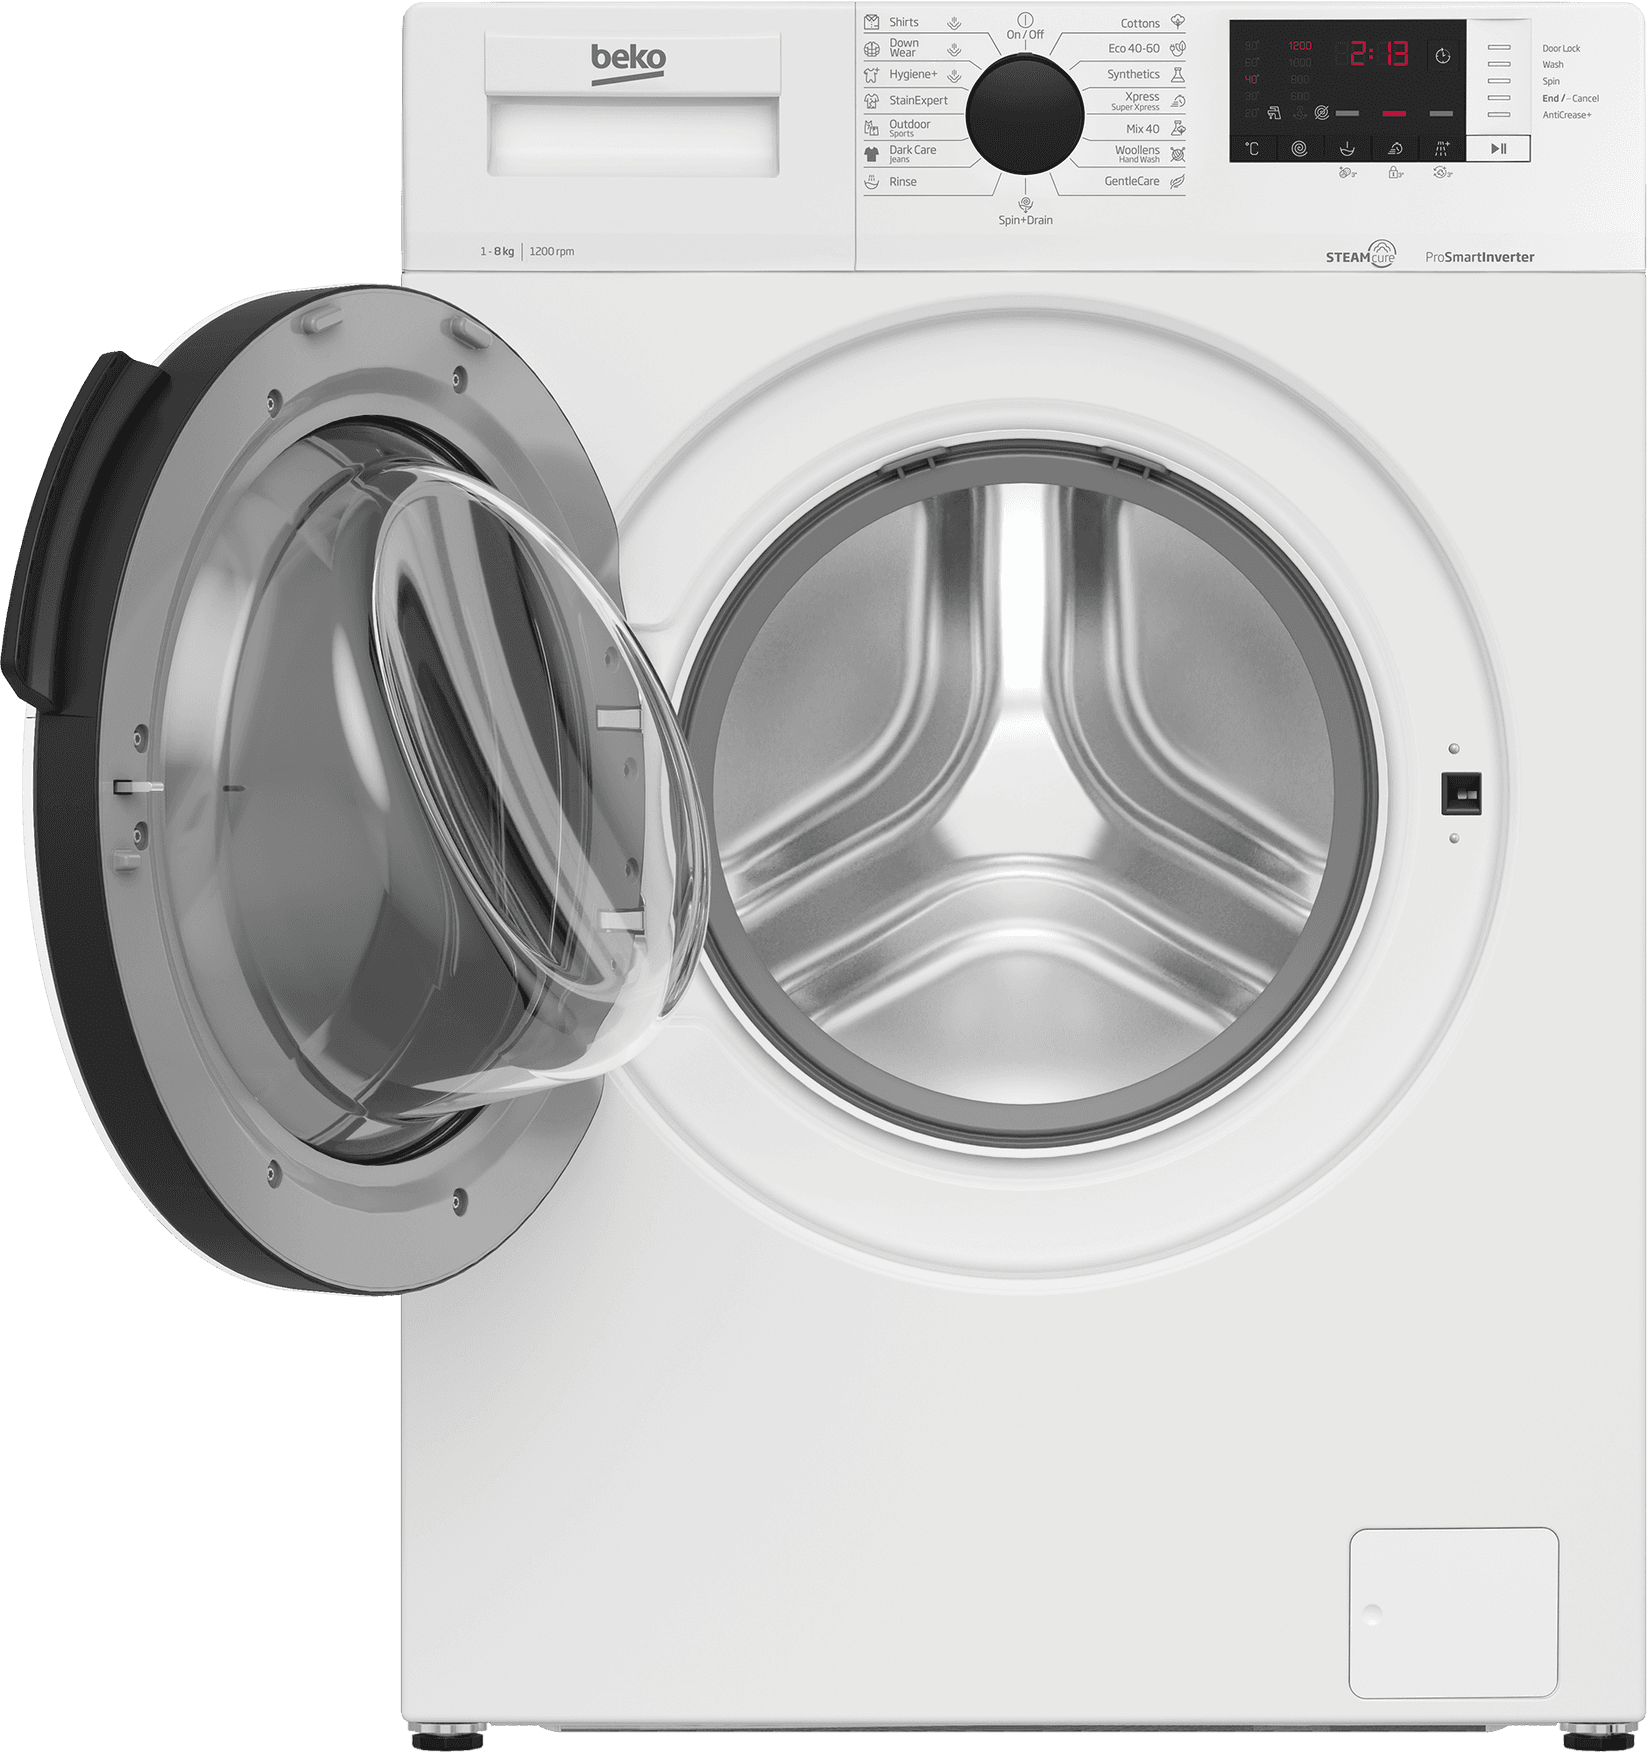 Selected image for BEKO WUE 8622B XCW Mašina za pranje veša, ProSmart motor